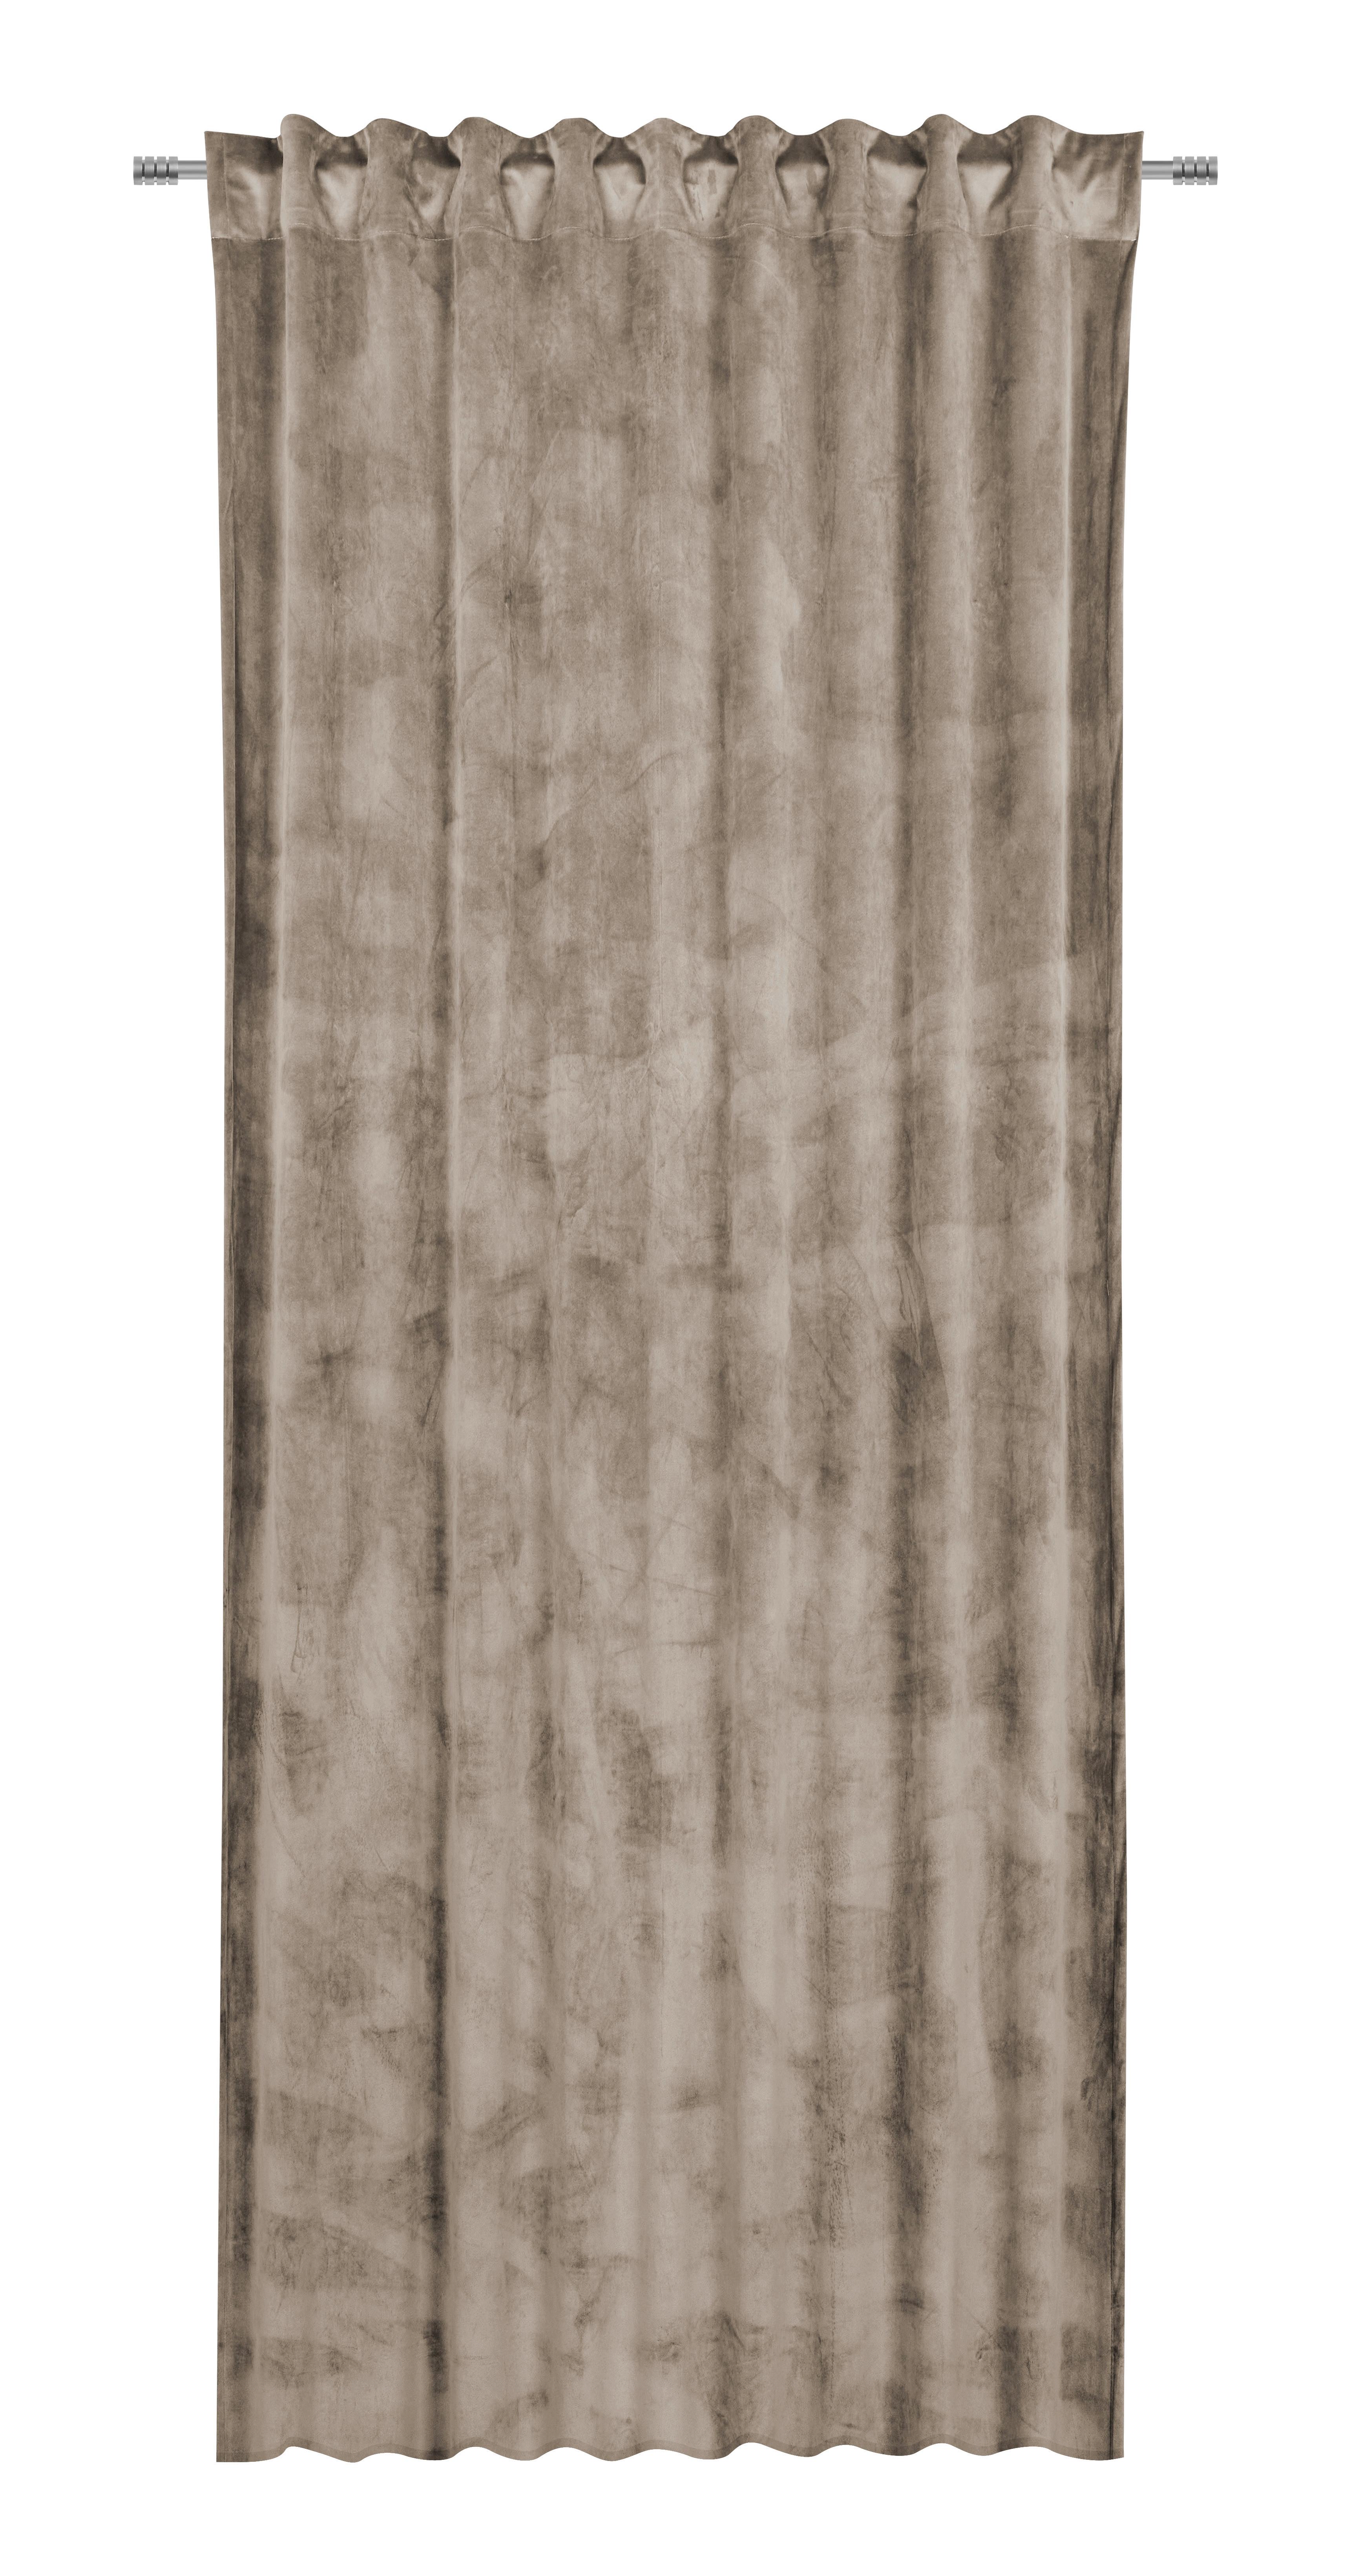 Gotova Zavjesa 140/245cm Viola - taupe, Konventionell, tekstil (140/245cm) - Premium Living